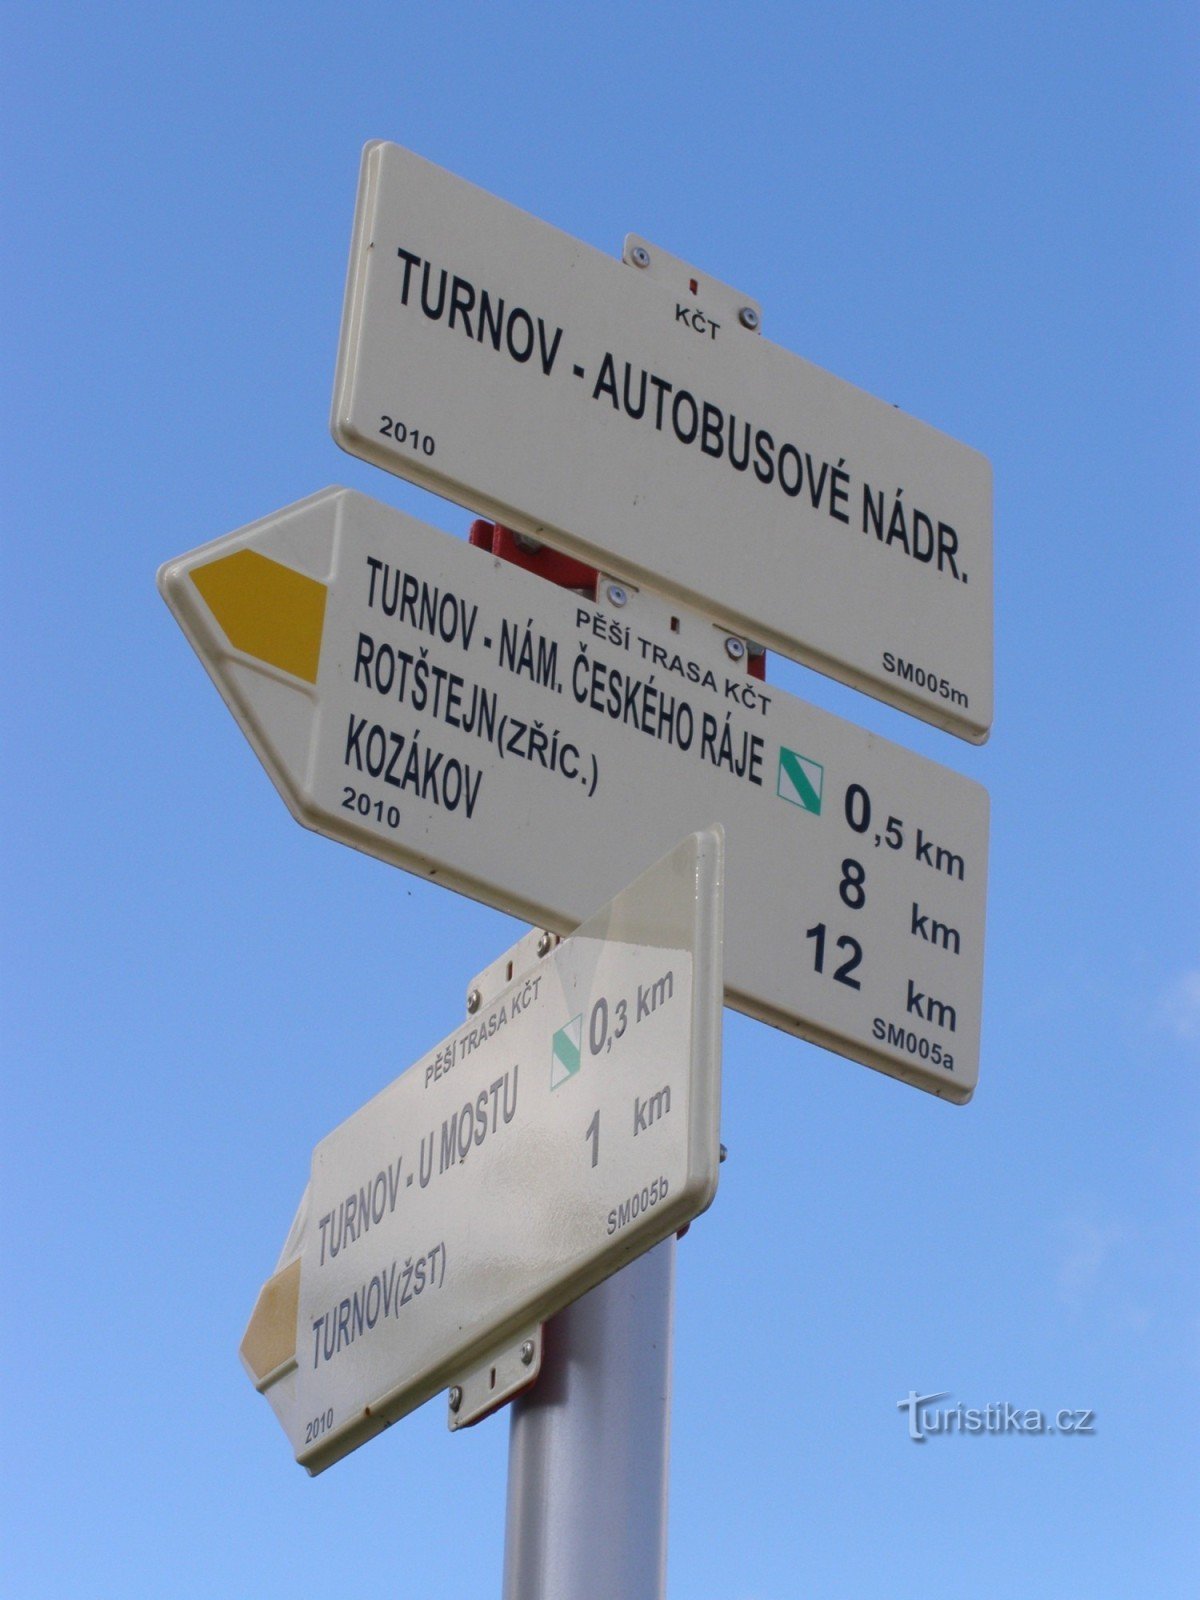 туристичне перехрестя Турнов - автостанція